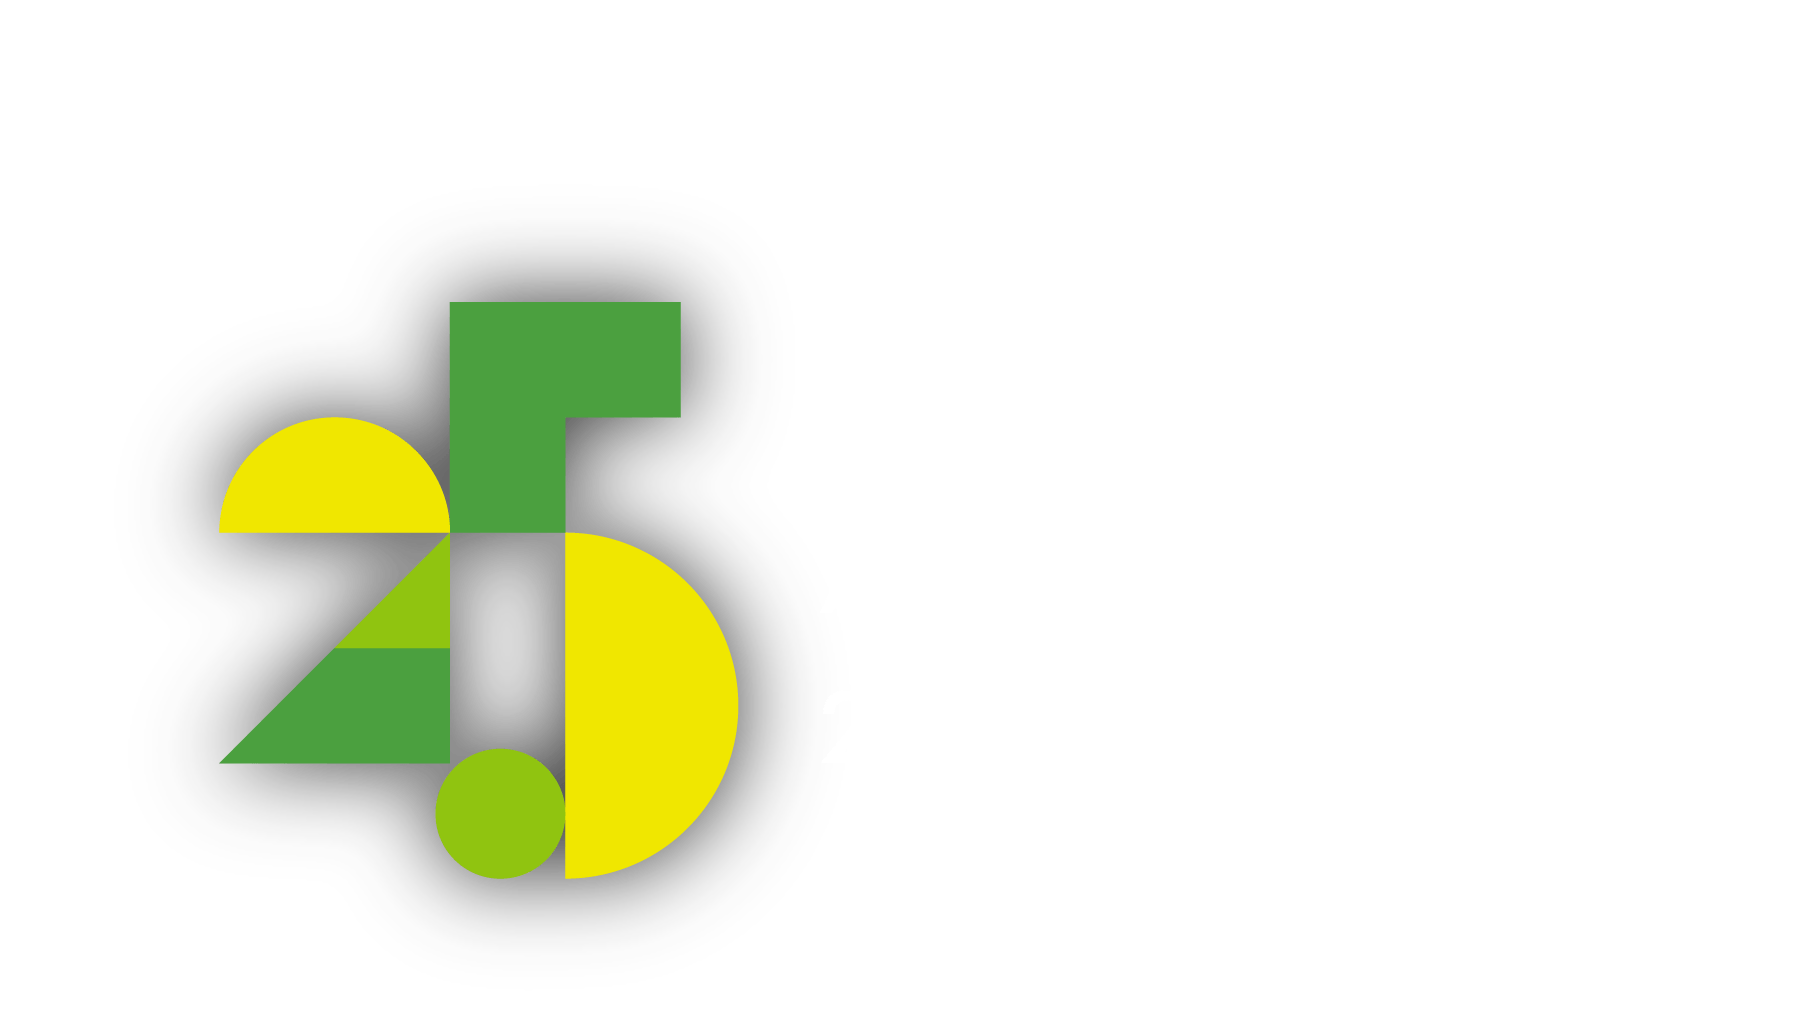 この足跡を次のステージへ。AEM & Co. 25th Anniversary